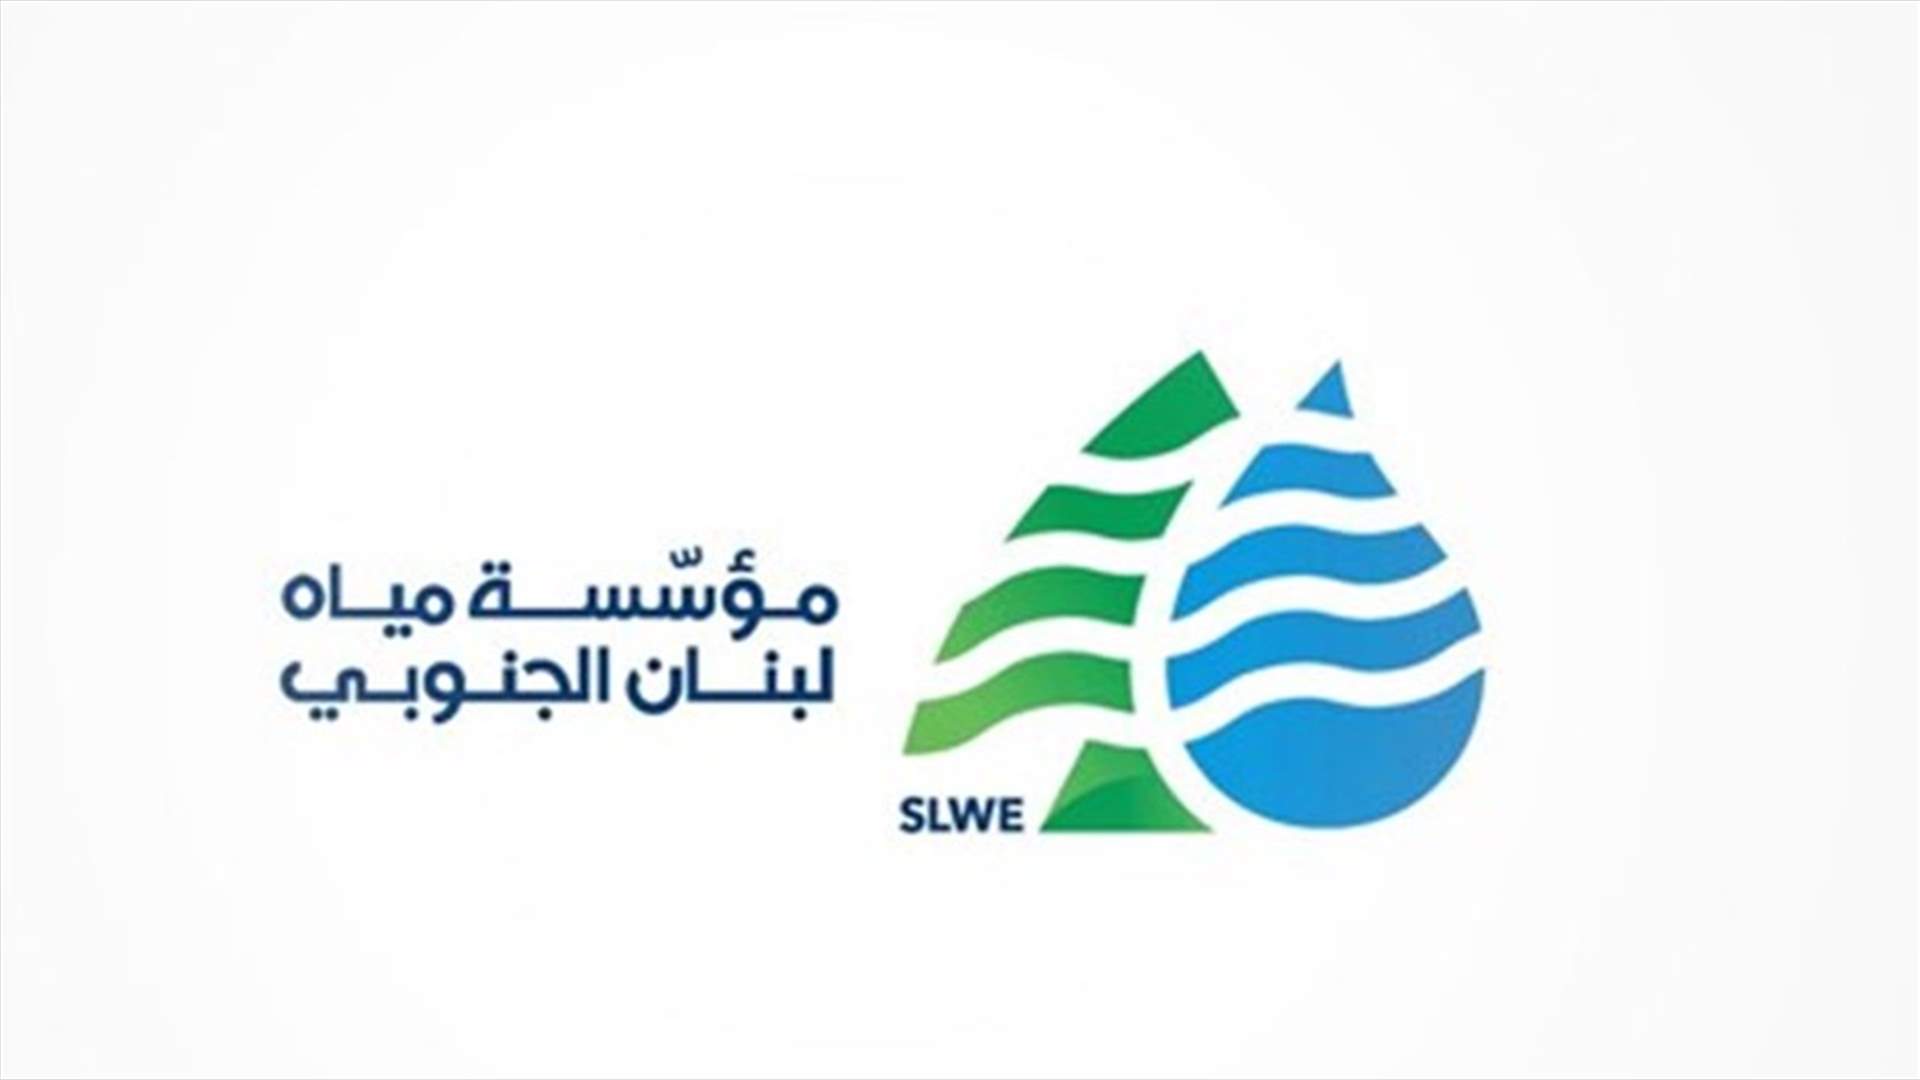 مؤسسة مياه لبنان الجنوبي: هذه المزحة السمجة لن تمرّ...